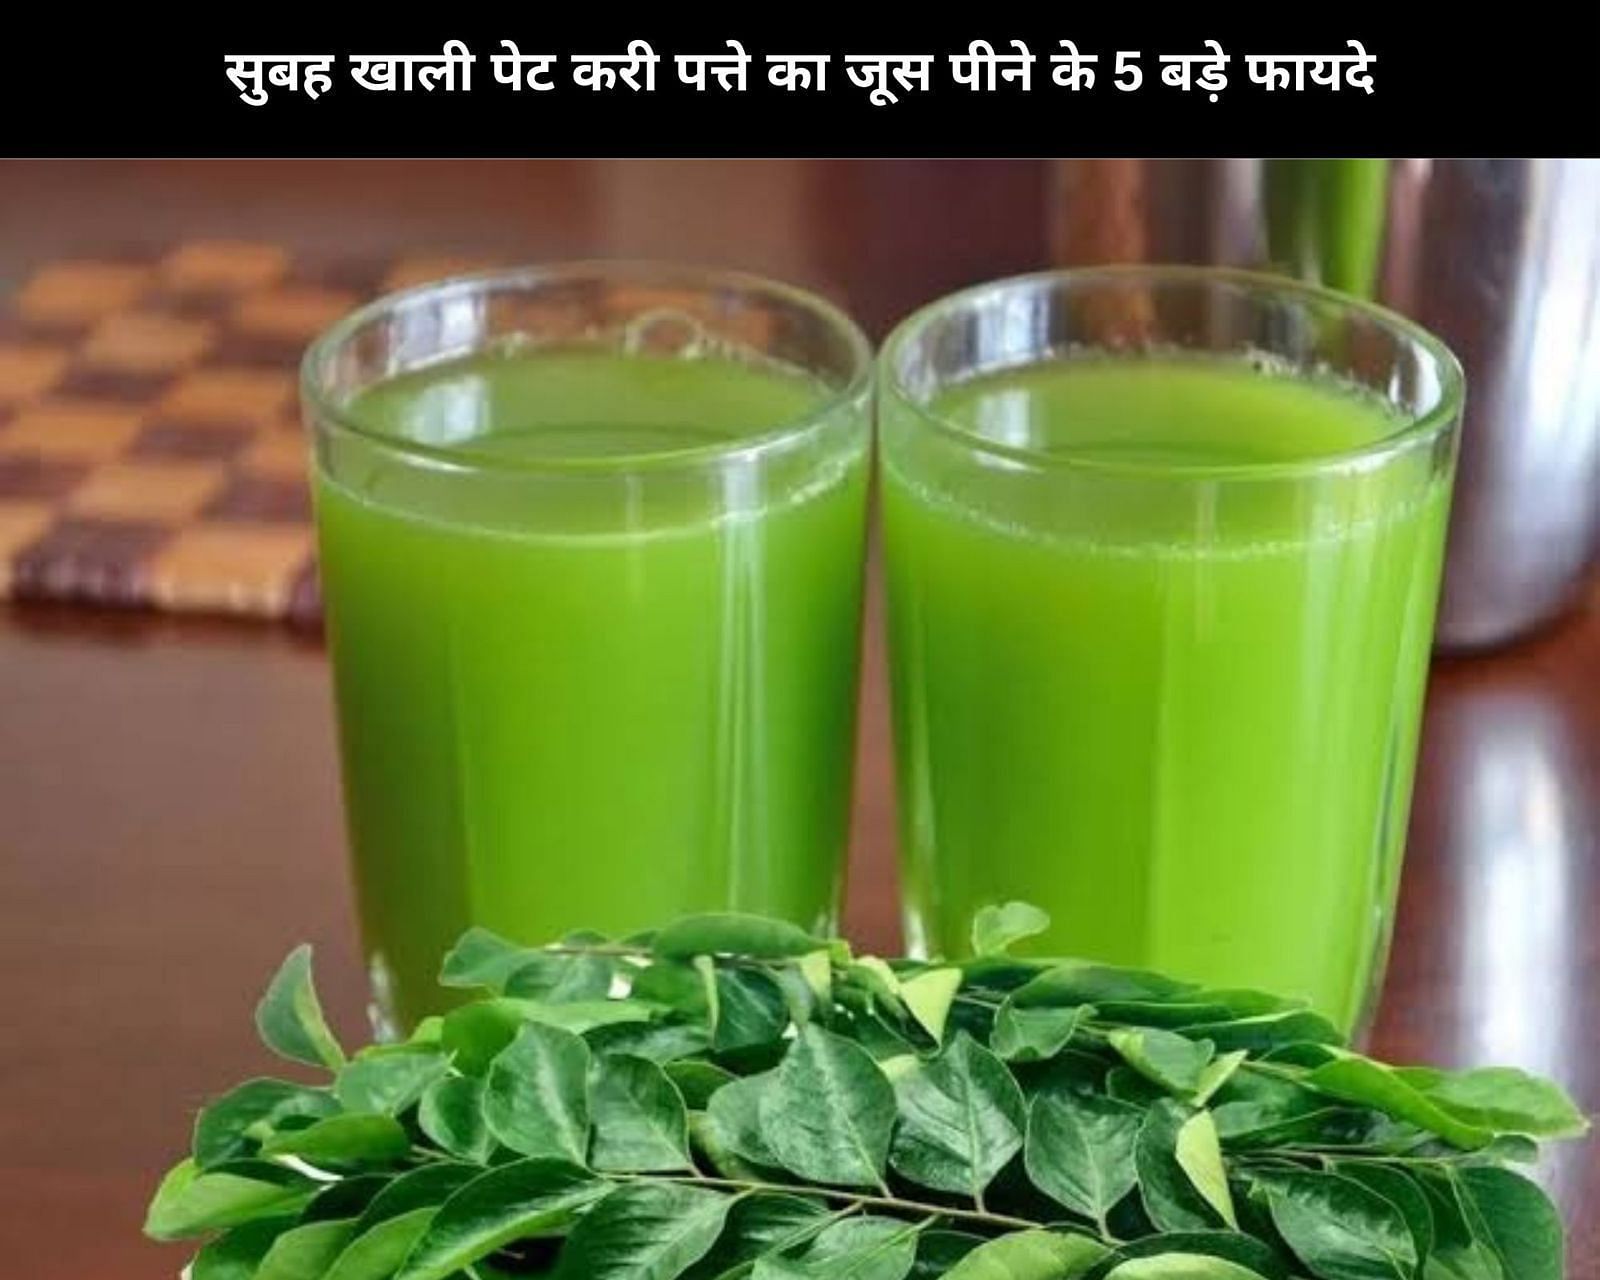  सुबह खाली पेट करी पत्ते का जूस पीने के 5 बड़े फायदे (फोटो - sportskeeda hindi)